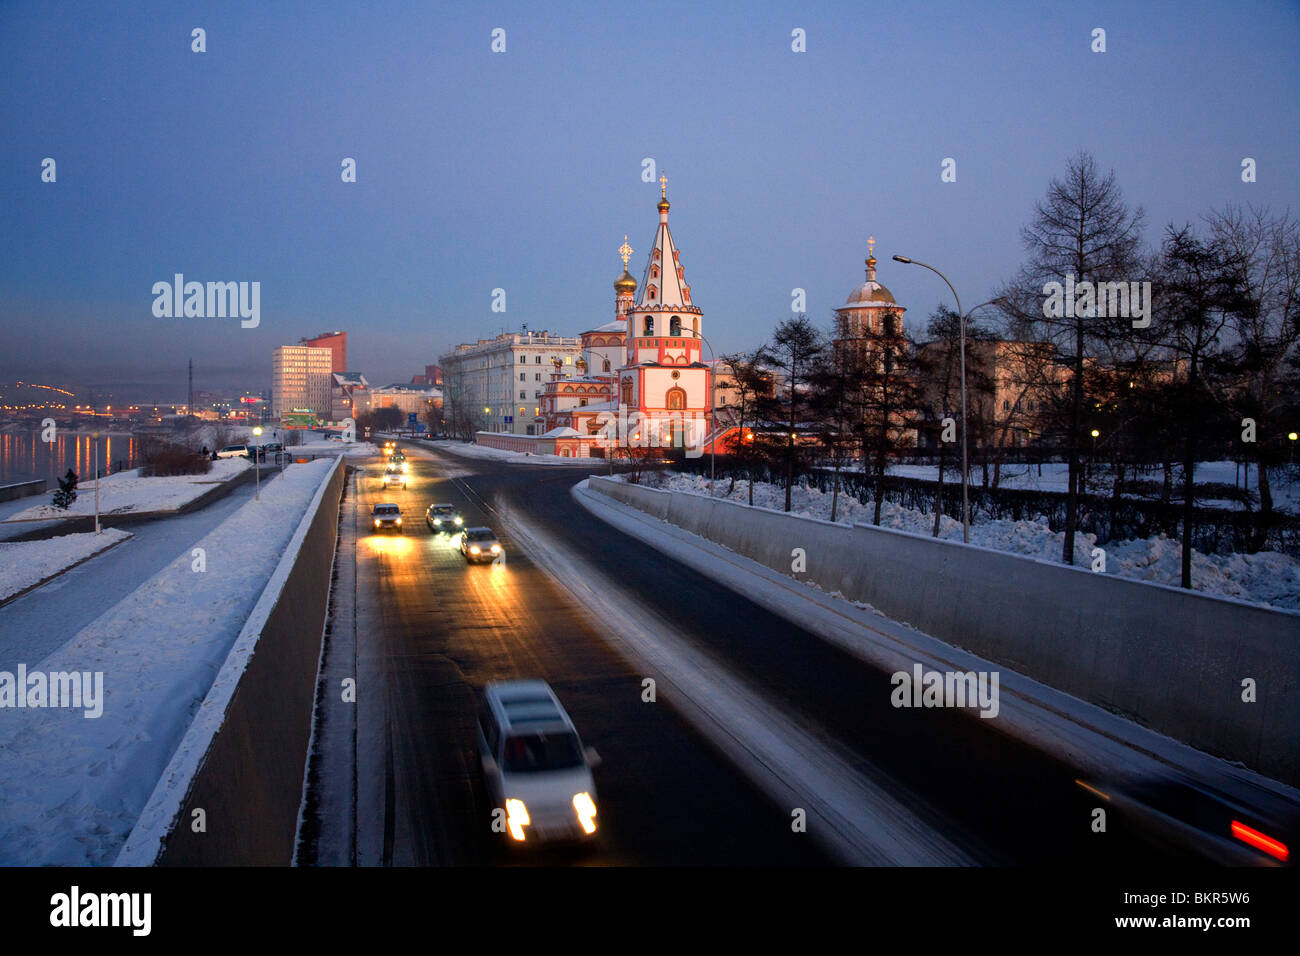 La Russia, Siberia, Irkutsk; una chiesa ortodossa vicino al fiume Angara e vetture passando rapidamente dalla. Foto Stock